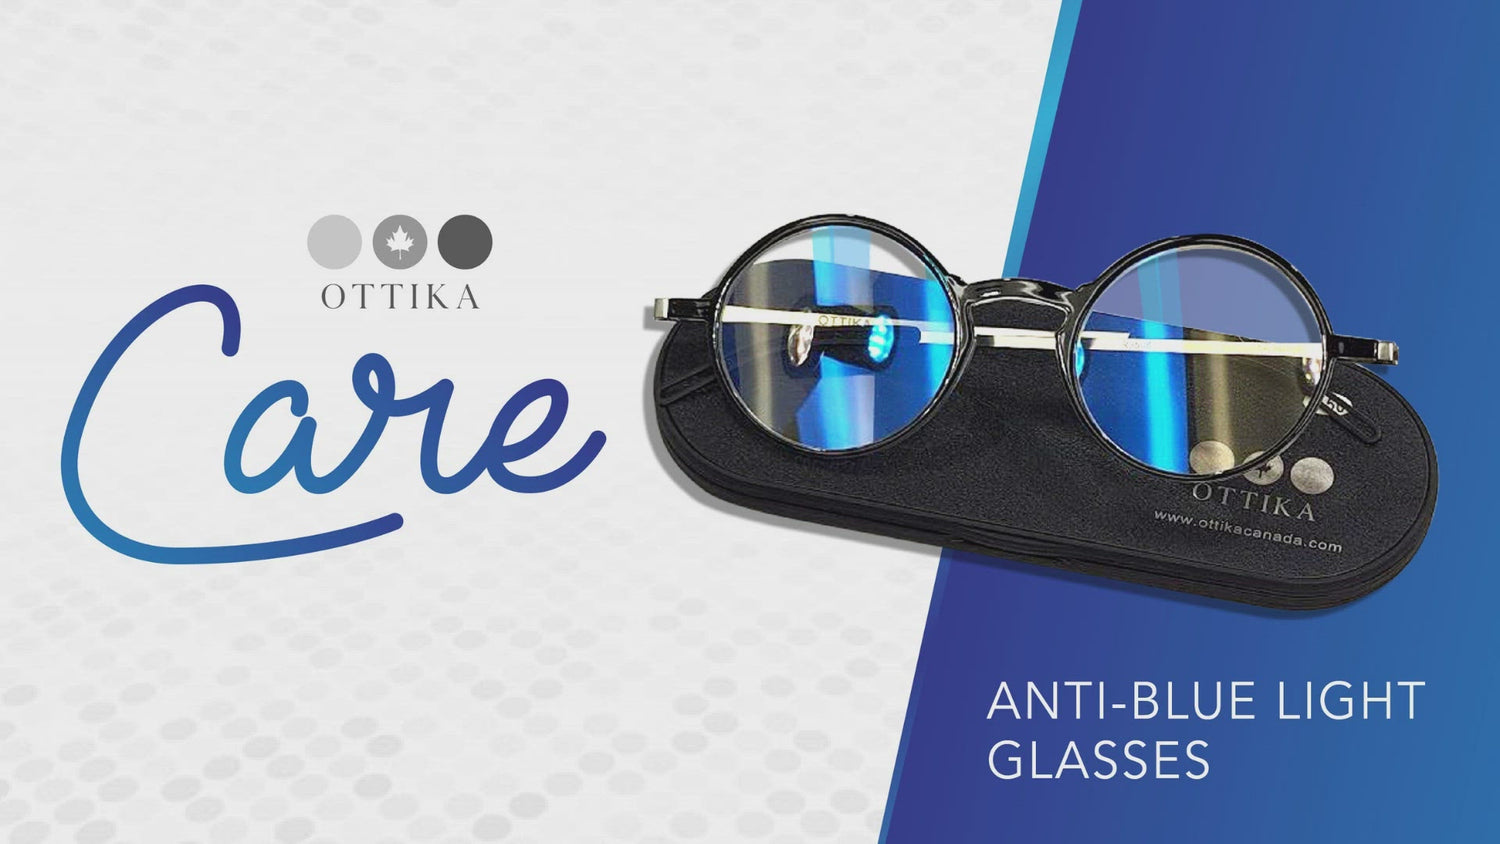 Ottika Care - Blue Light Blocking Glasses | Model N1001